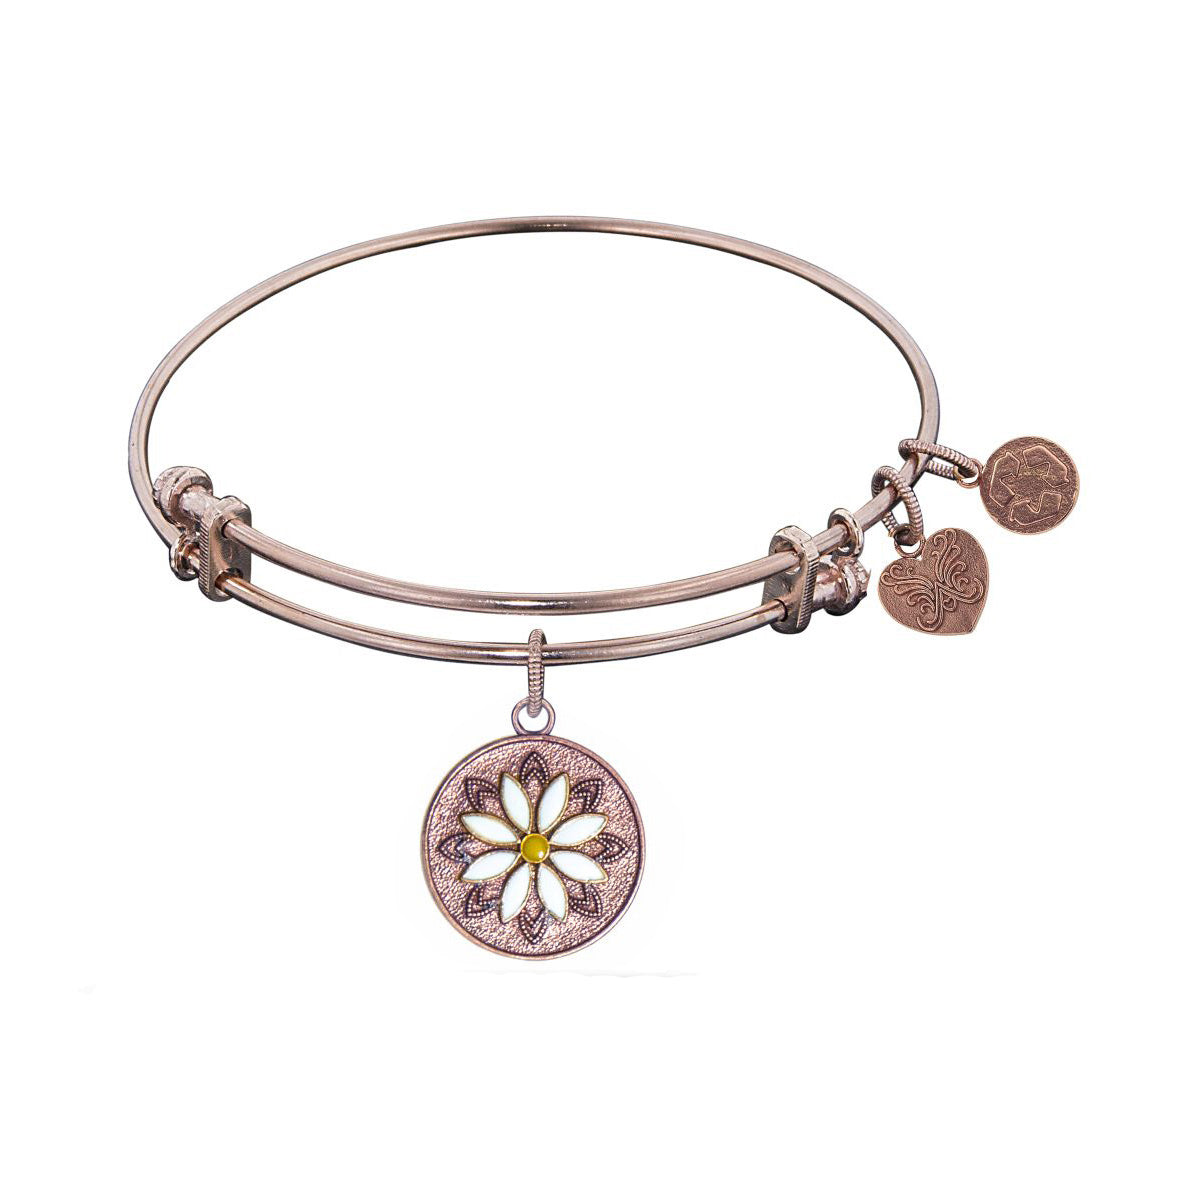 Stipple Finish Brass Daisy Flower Angelica Bangle Bracelet, 7.25" fine designer jewelry for men and women